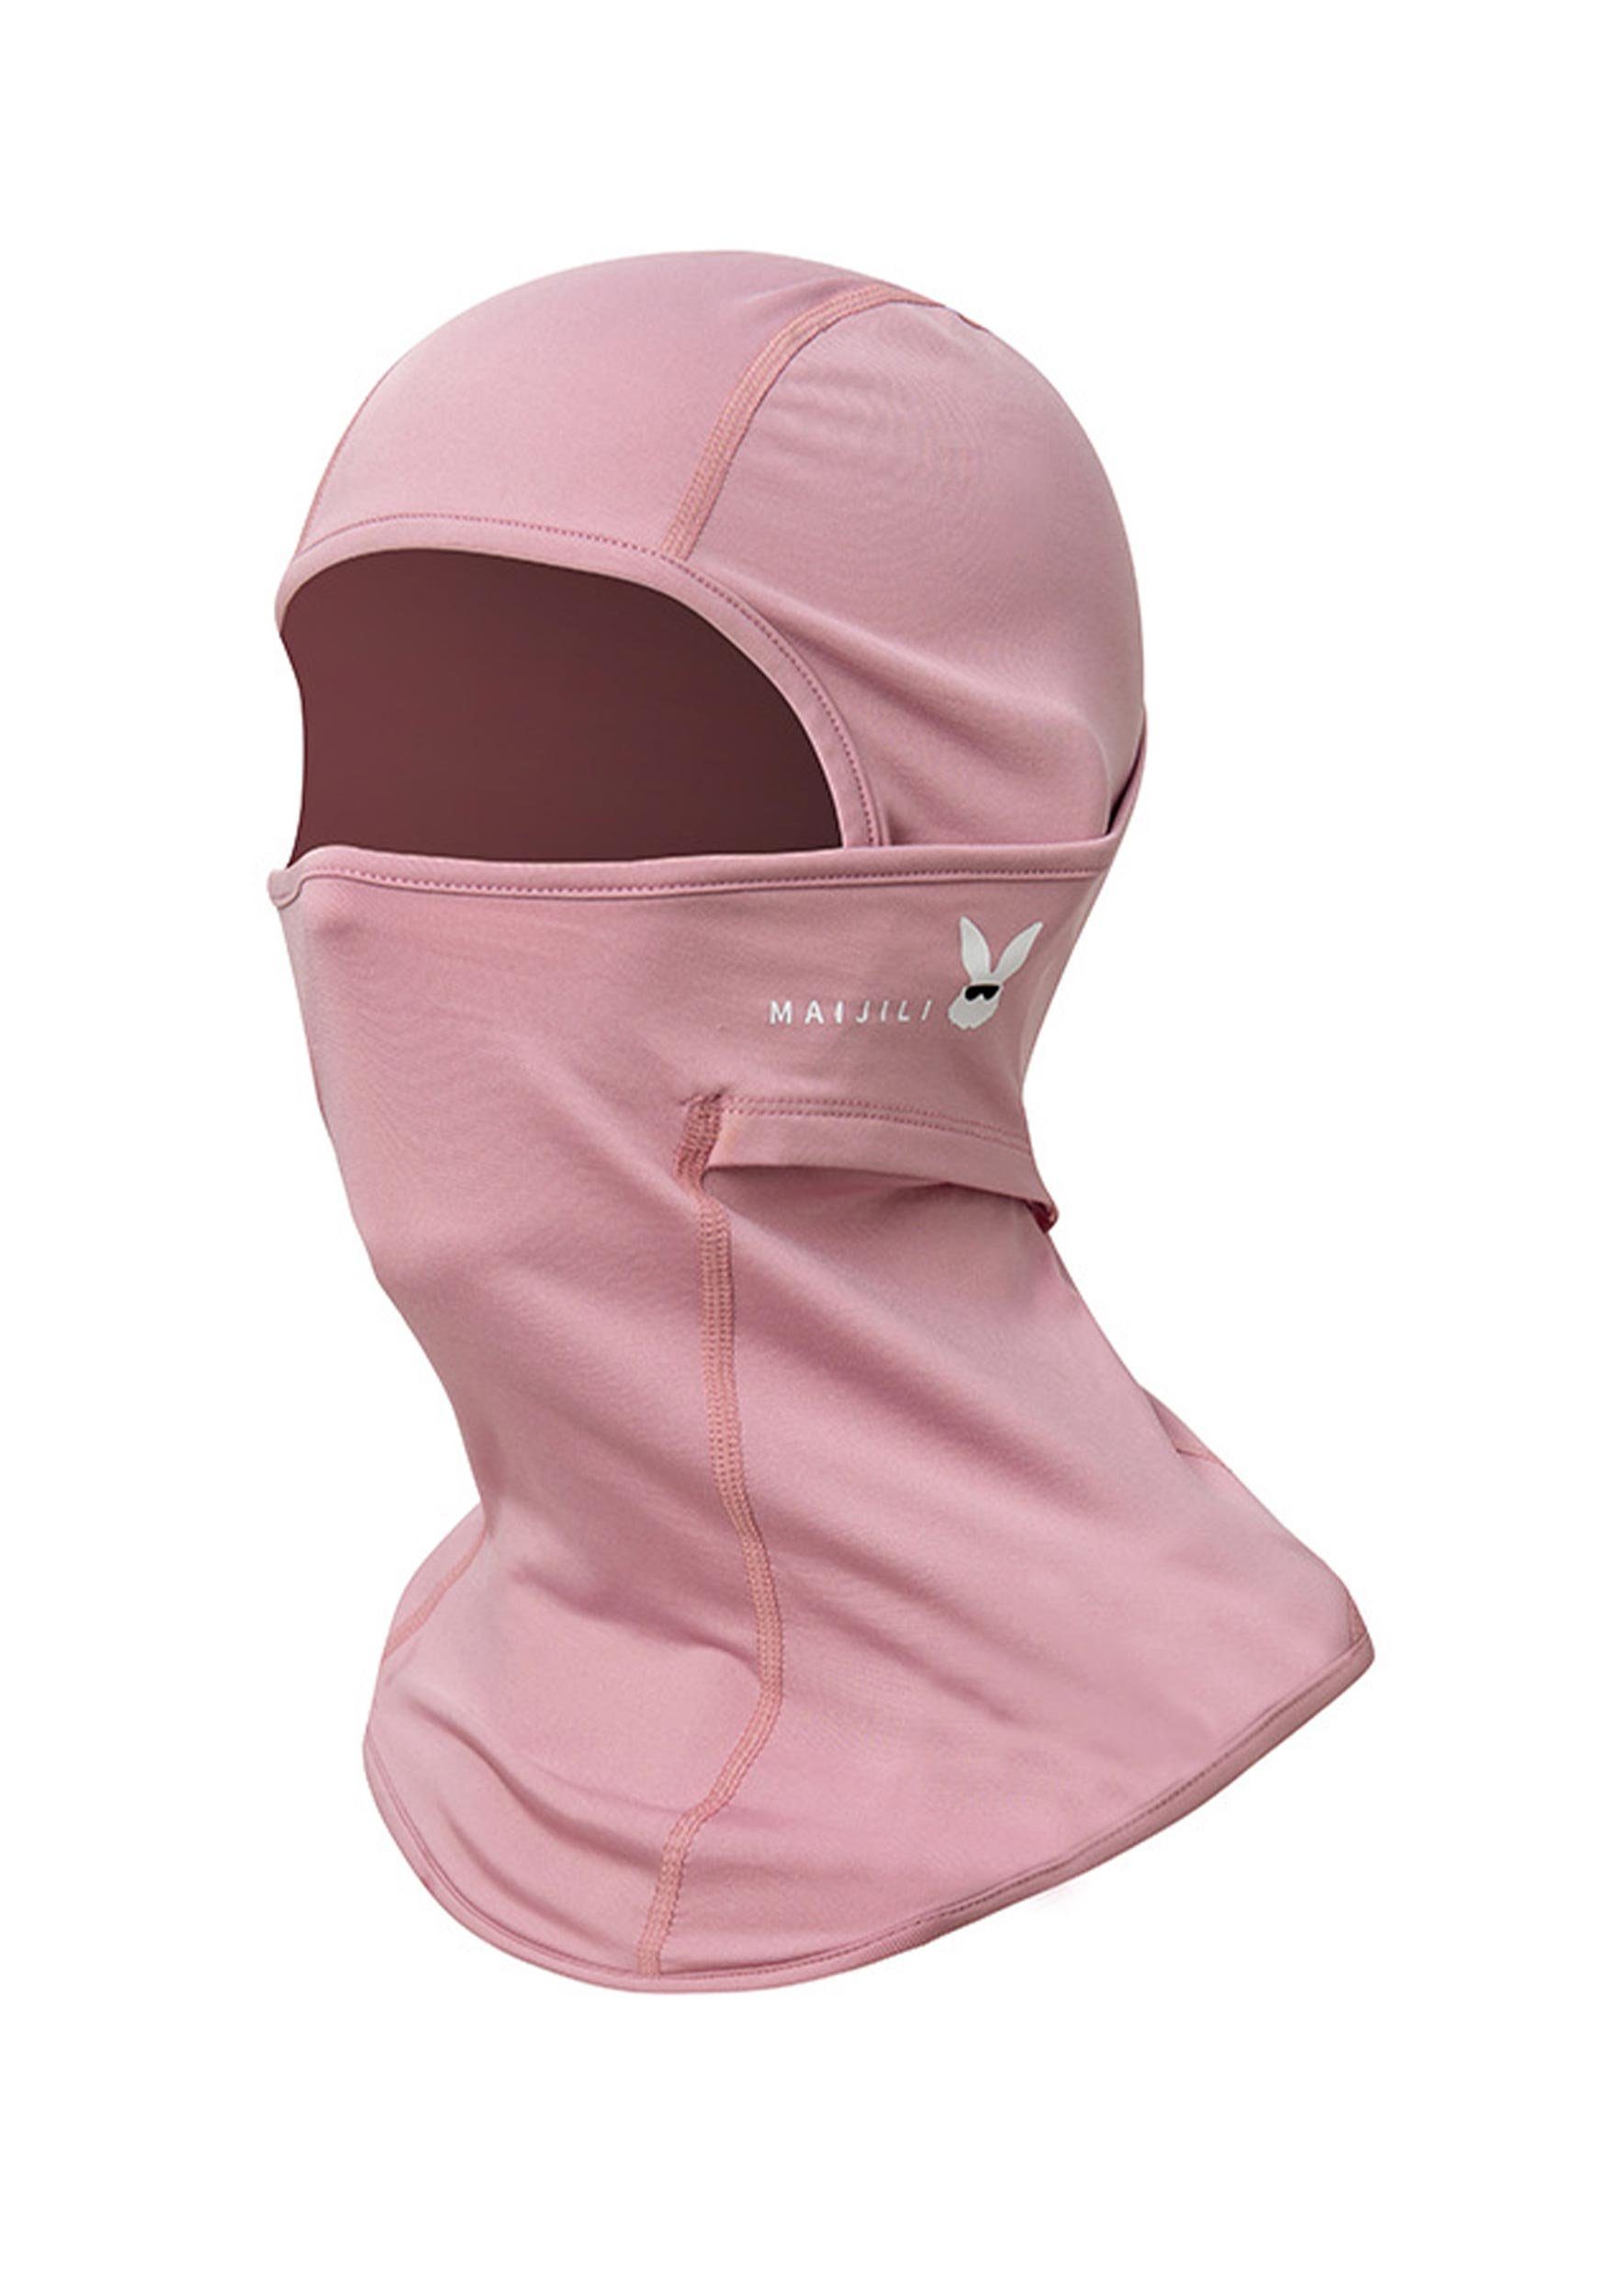 MAGICSHE UV-Strahlen Schutz Skimaske Umfassenden Widersteht Rosa für Sturmhaube